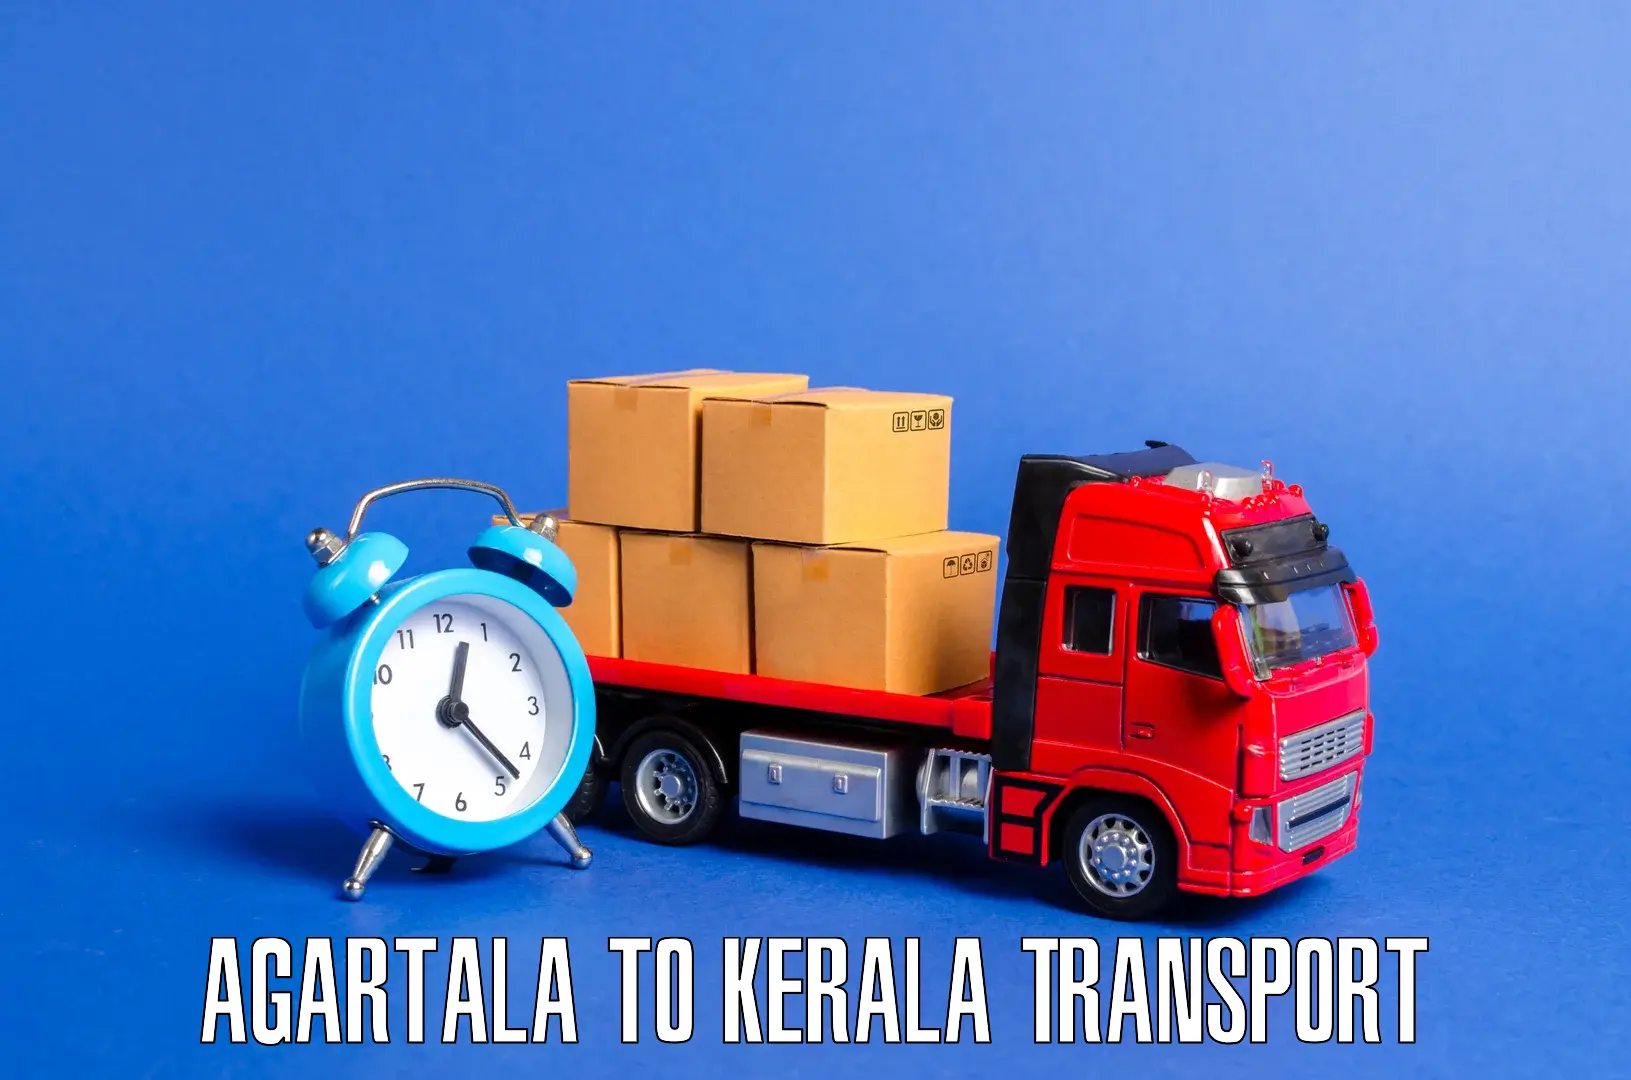 Cargo transportation services Agartala to Kallachi